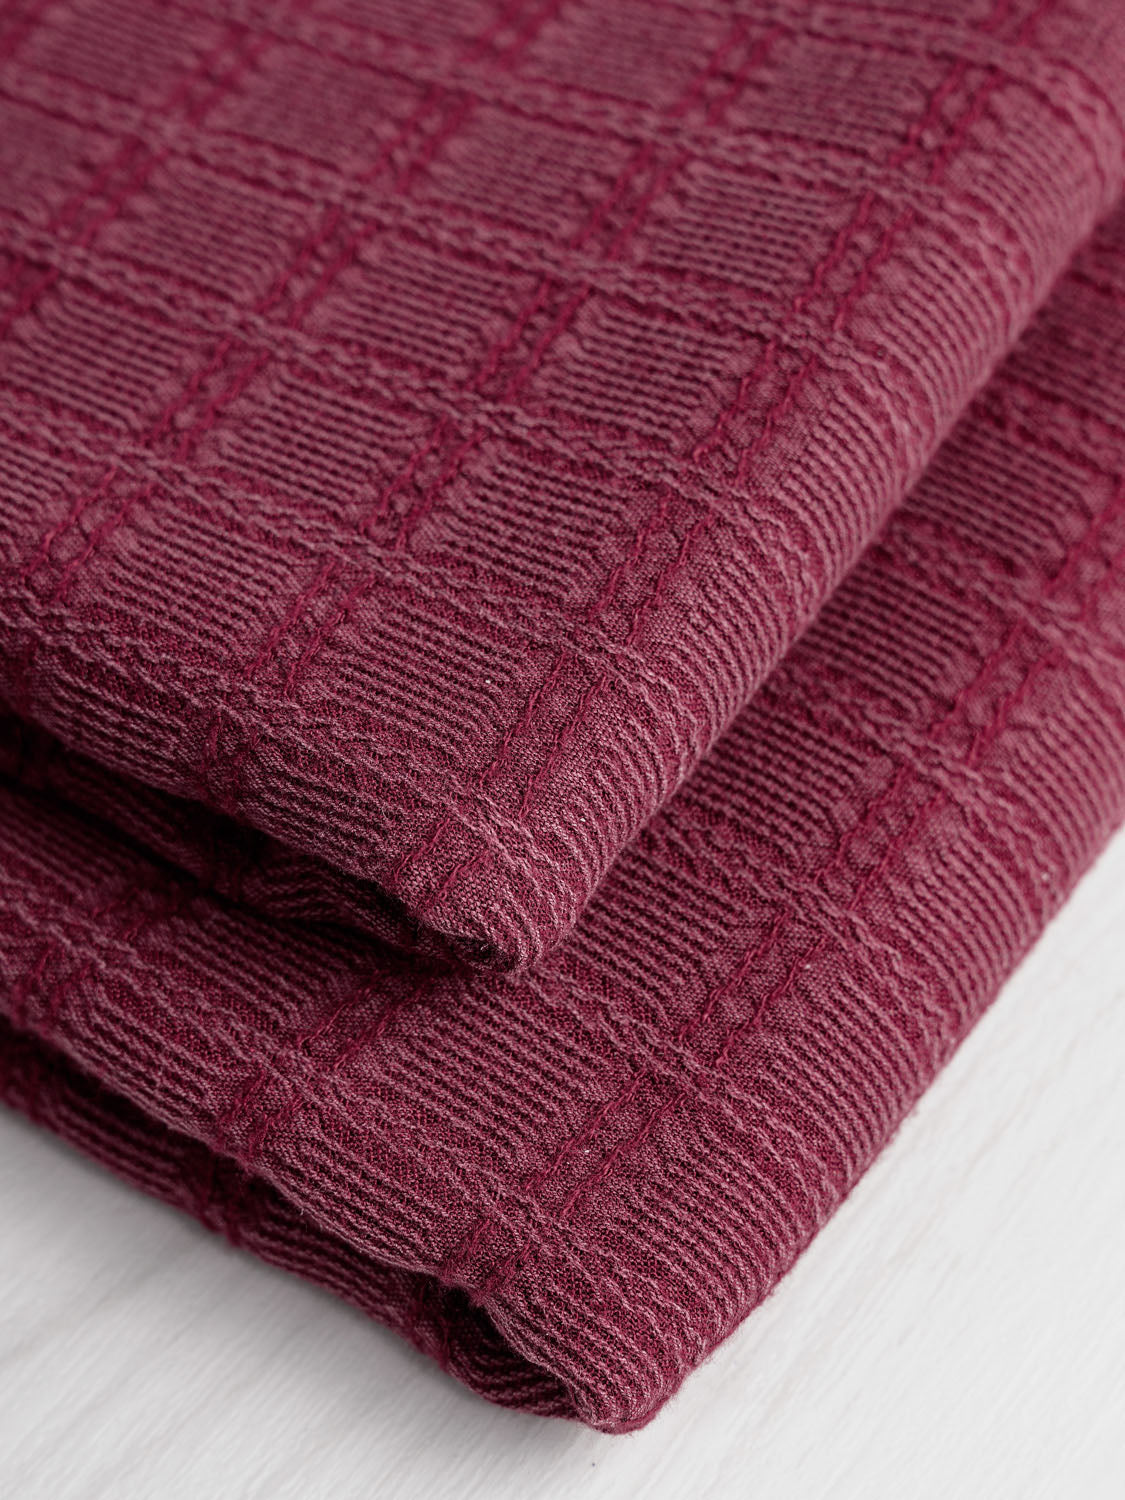 Check Textured Viscose Deadstock - Wine | Core Fabrics